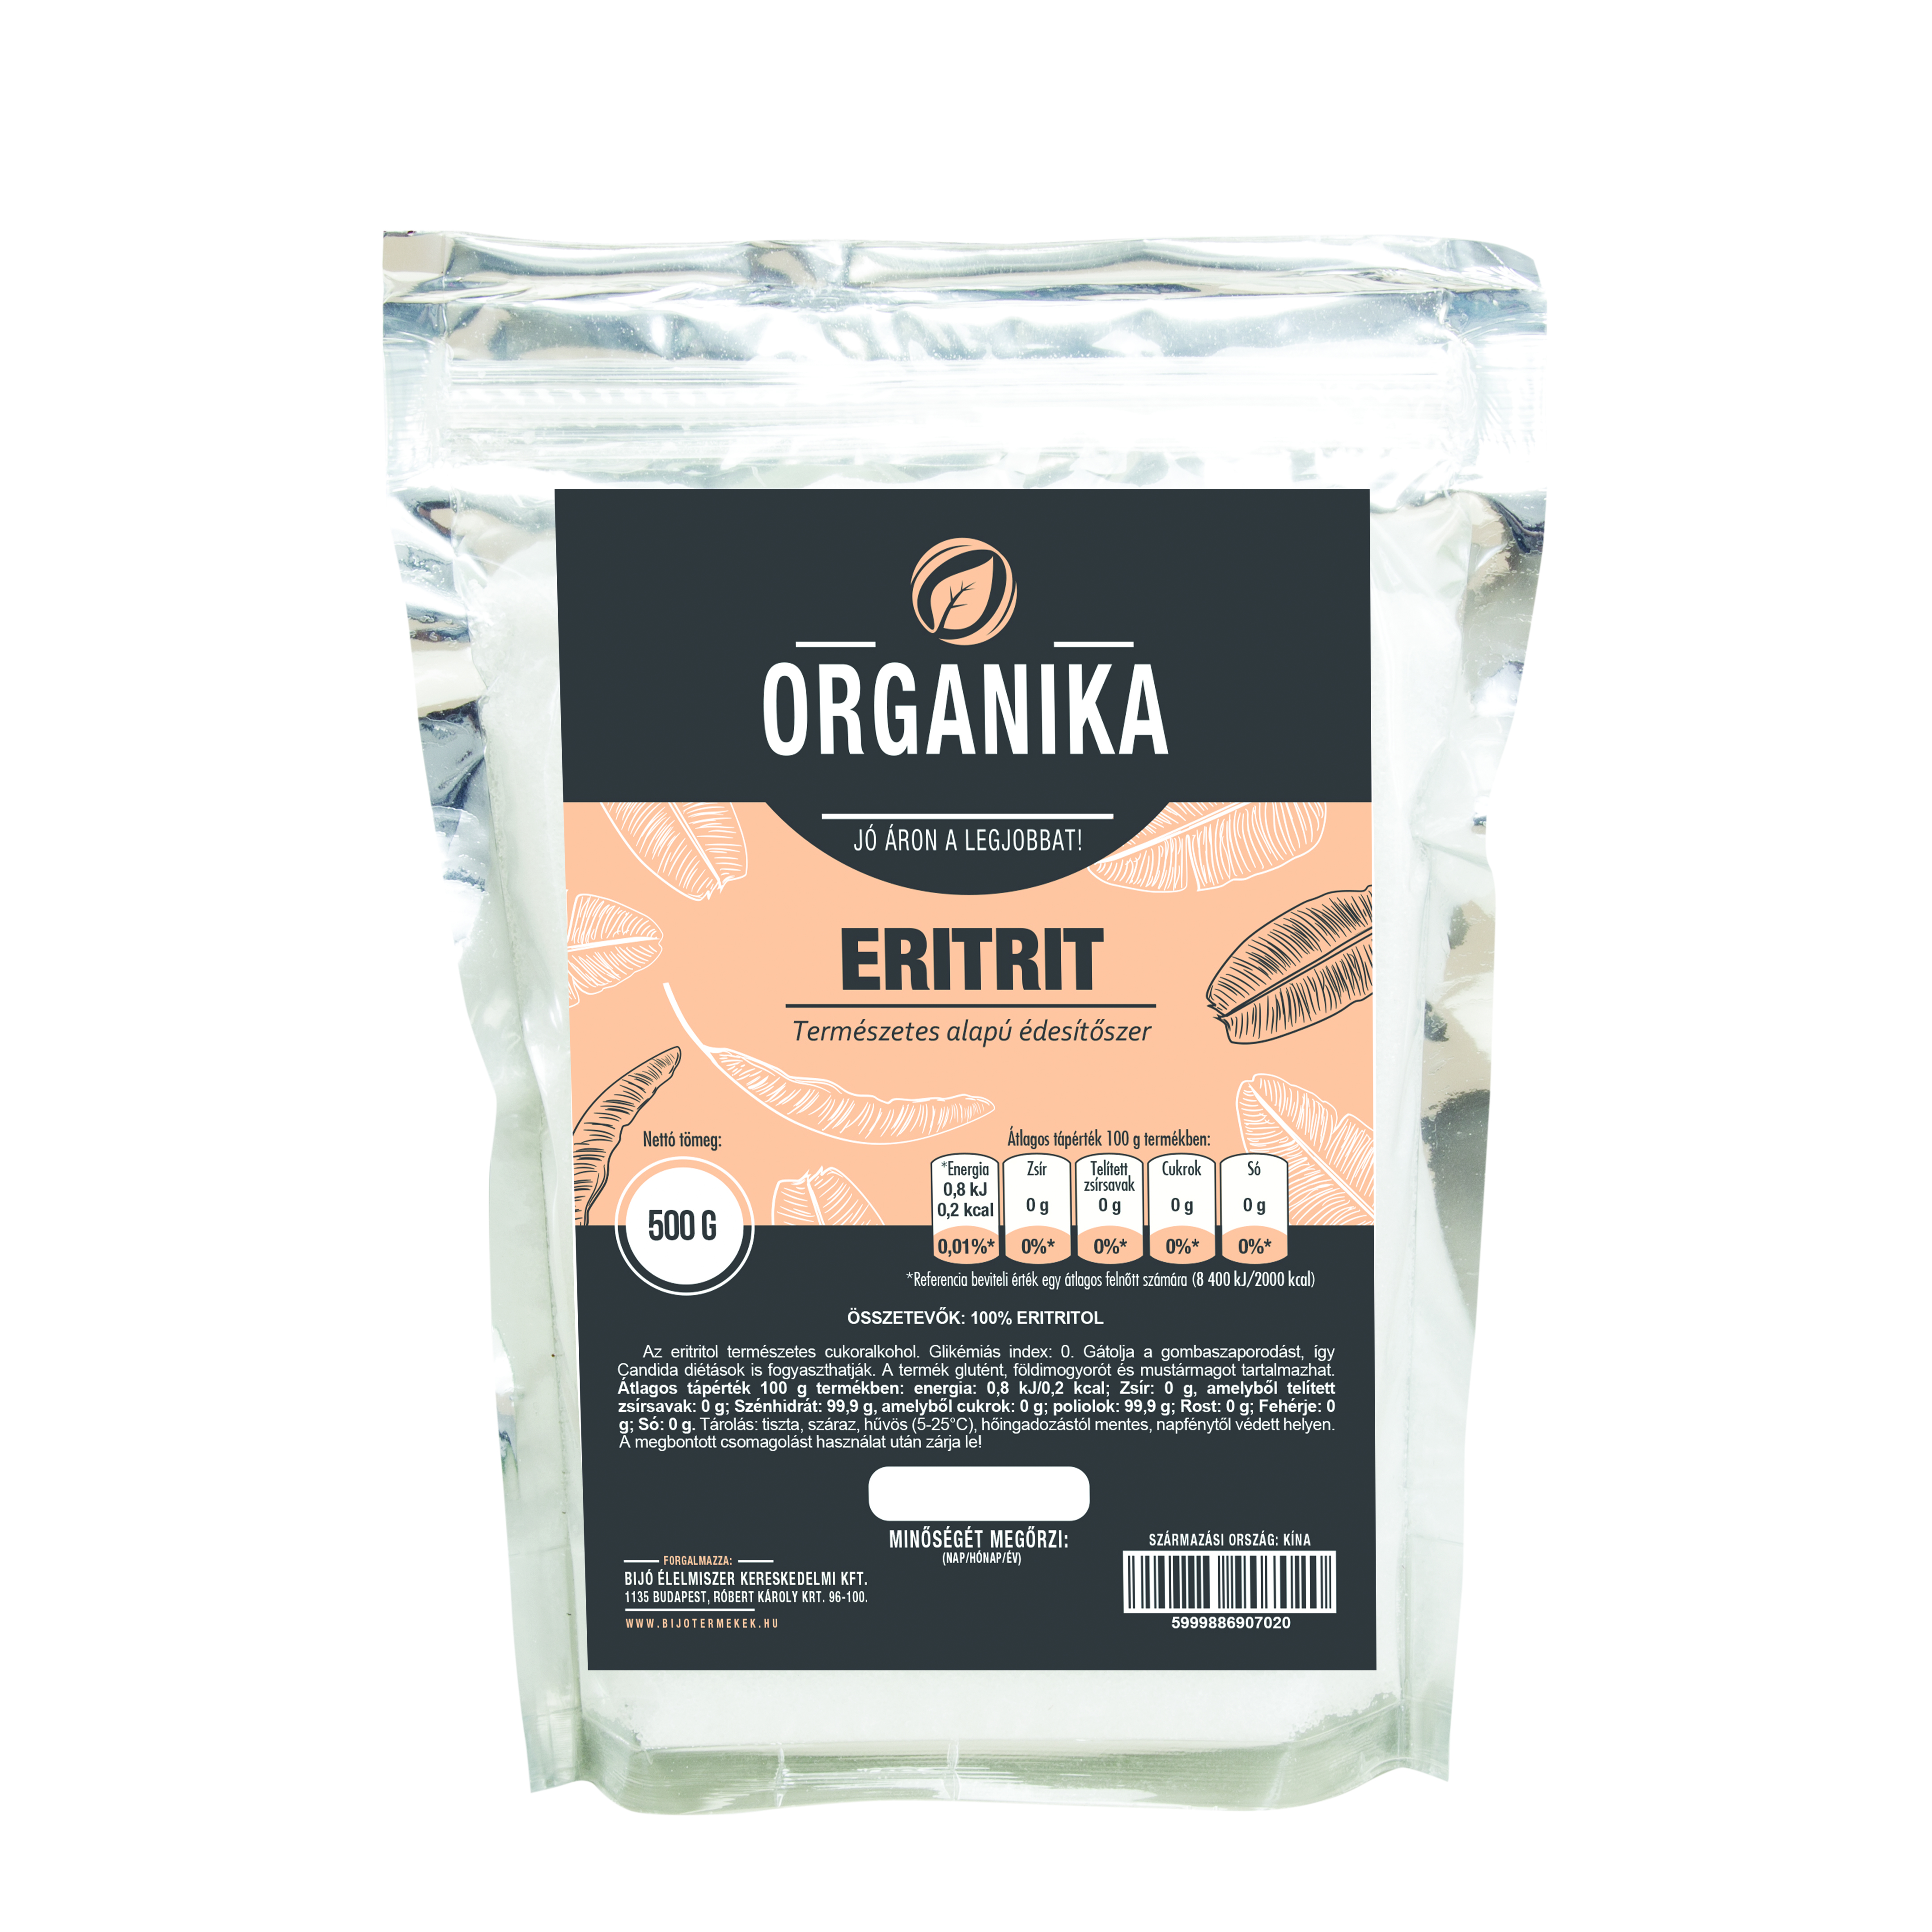 Organika eritrit 500 g